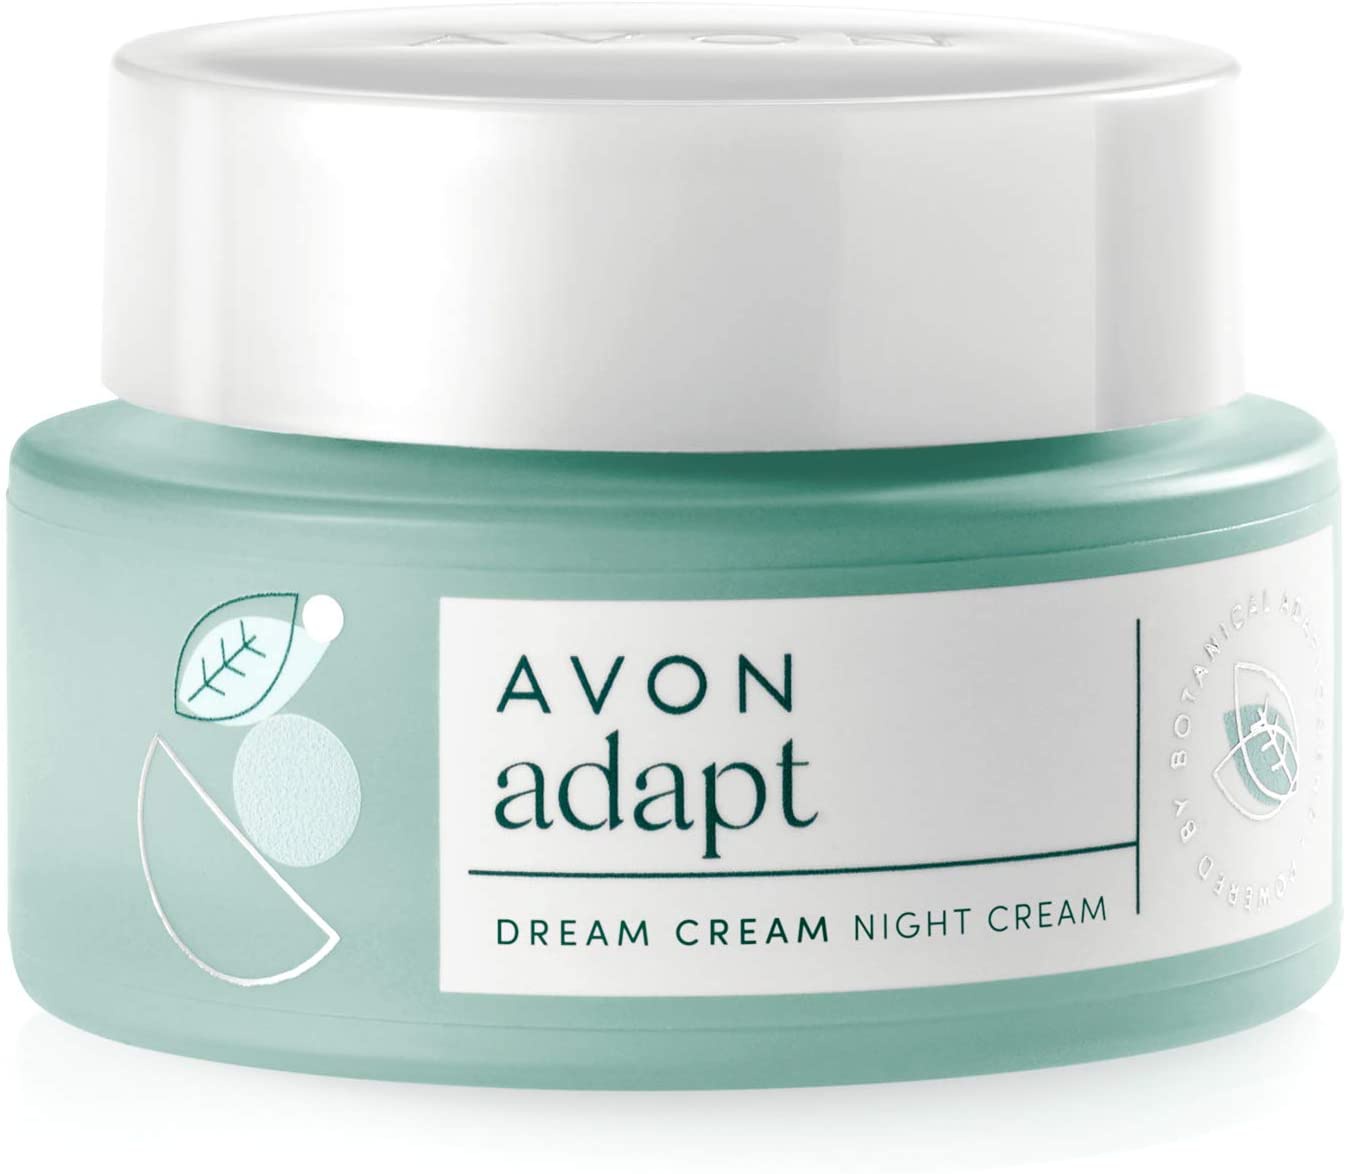 Avon Adapt Dream Cream Night Cream